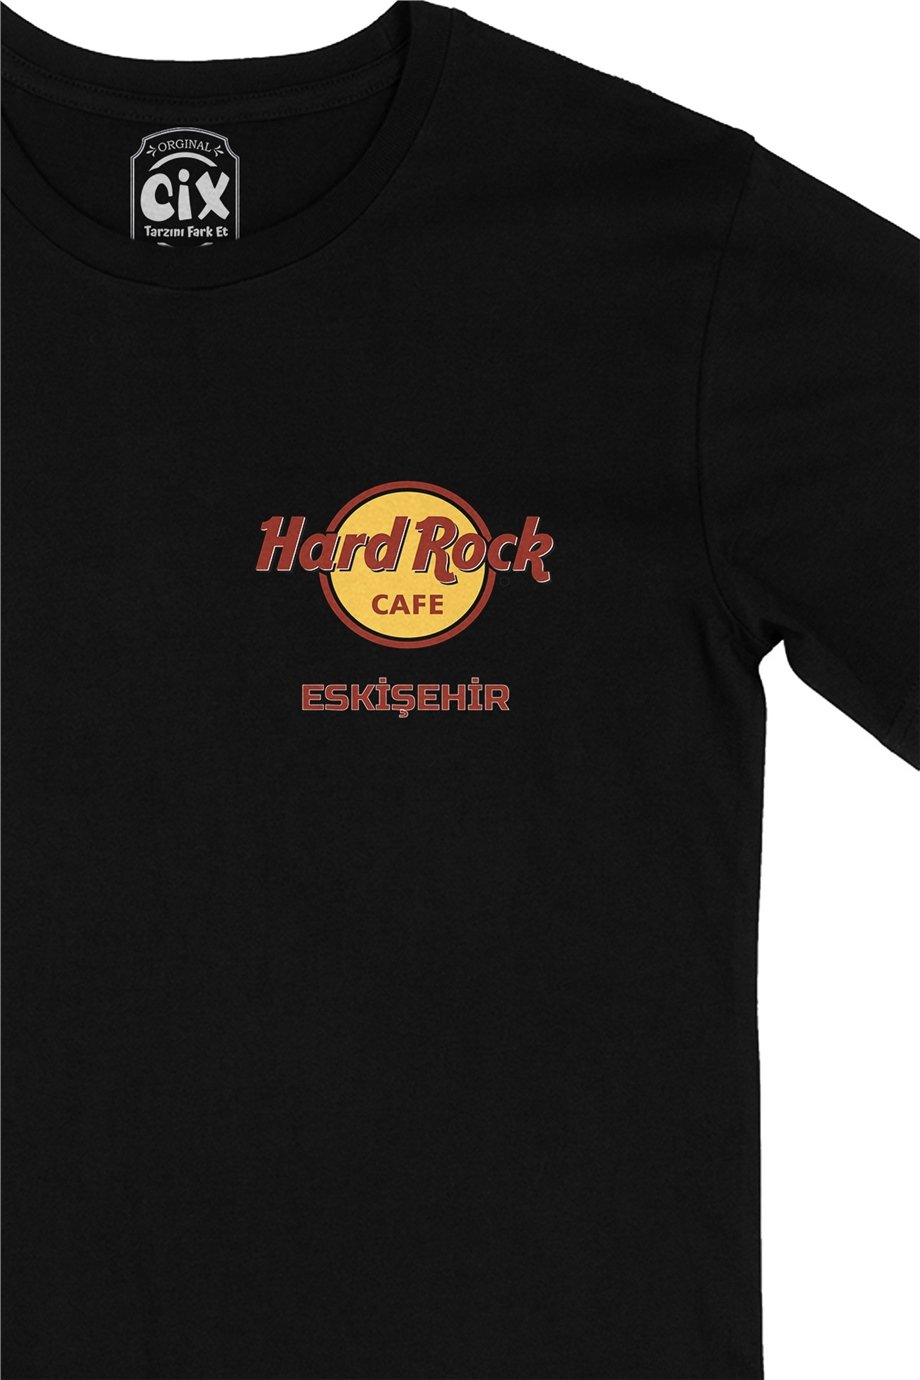 Hard Rock Cafe Eskişehir Cep Logo Tasarımlı Siyah Tişört - Ücretsiz Kargo